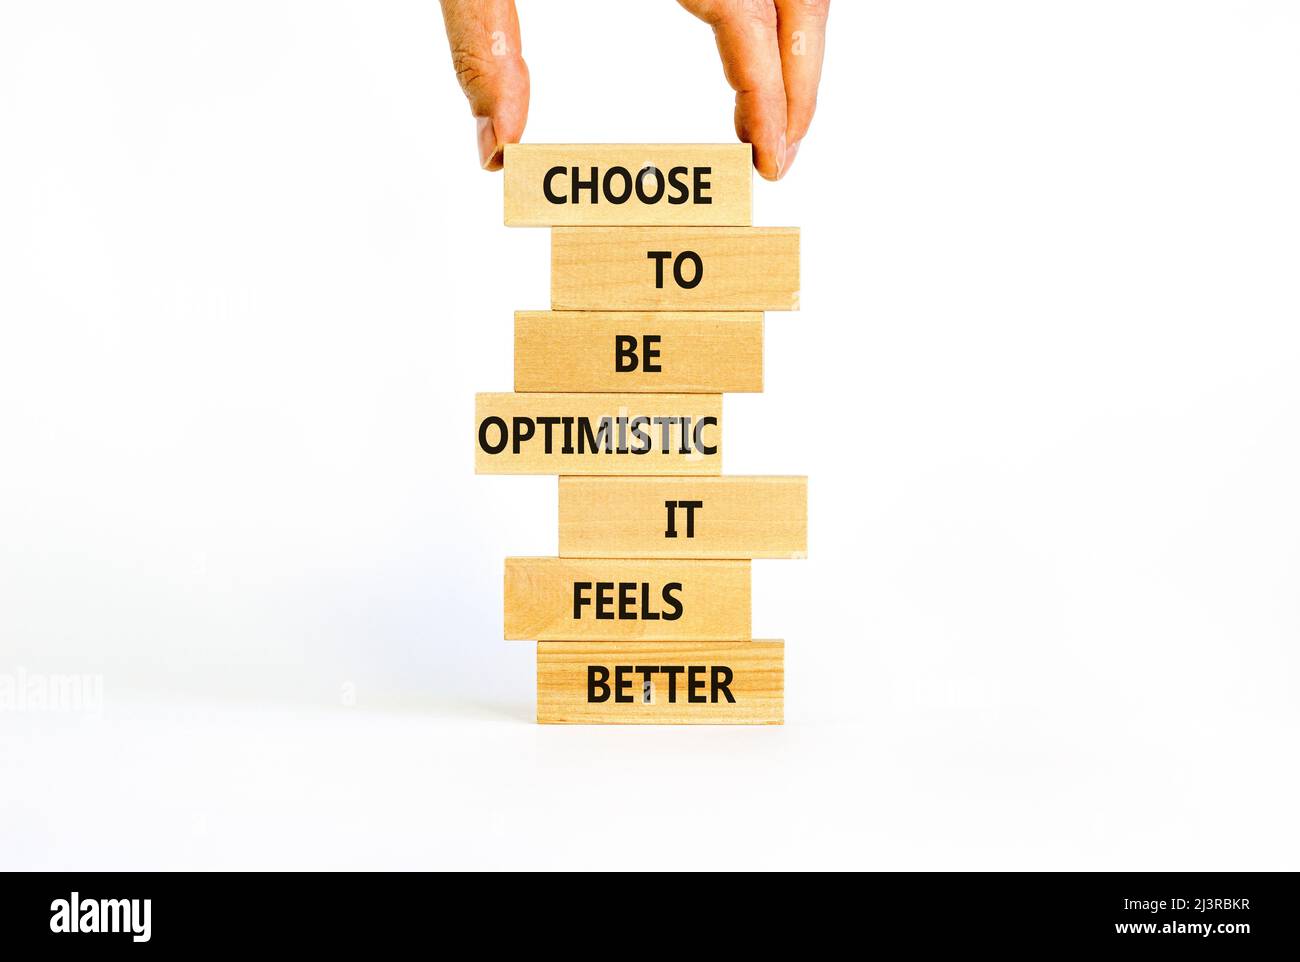 Optimistisch ist das bessere Symbol. Holzblöcke mit Worten Wählen Sie optimistisch zu sein, es fühlt sich besser an. Schöner weißer Hintergrund-Kopierbereich. Geschäftsmann Hand Stockfoto